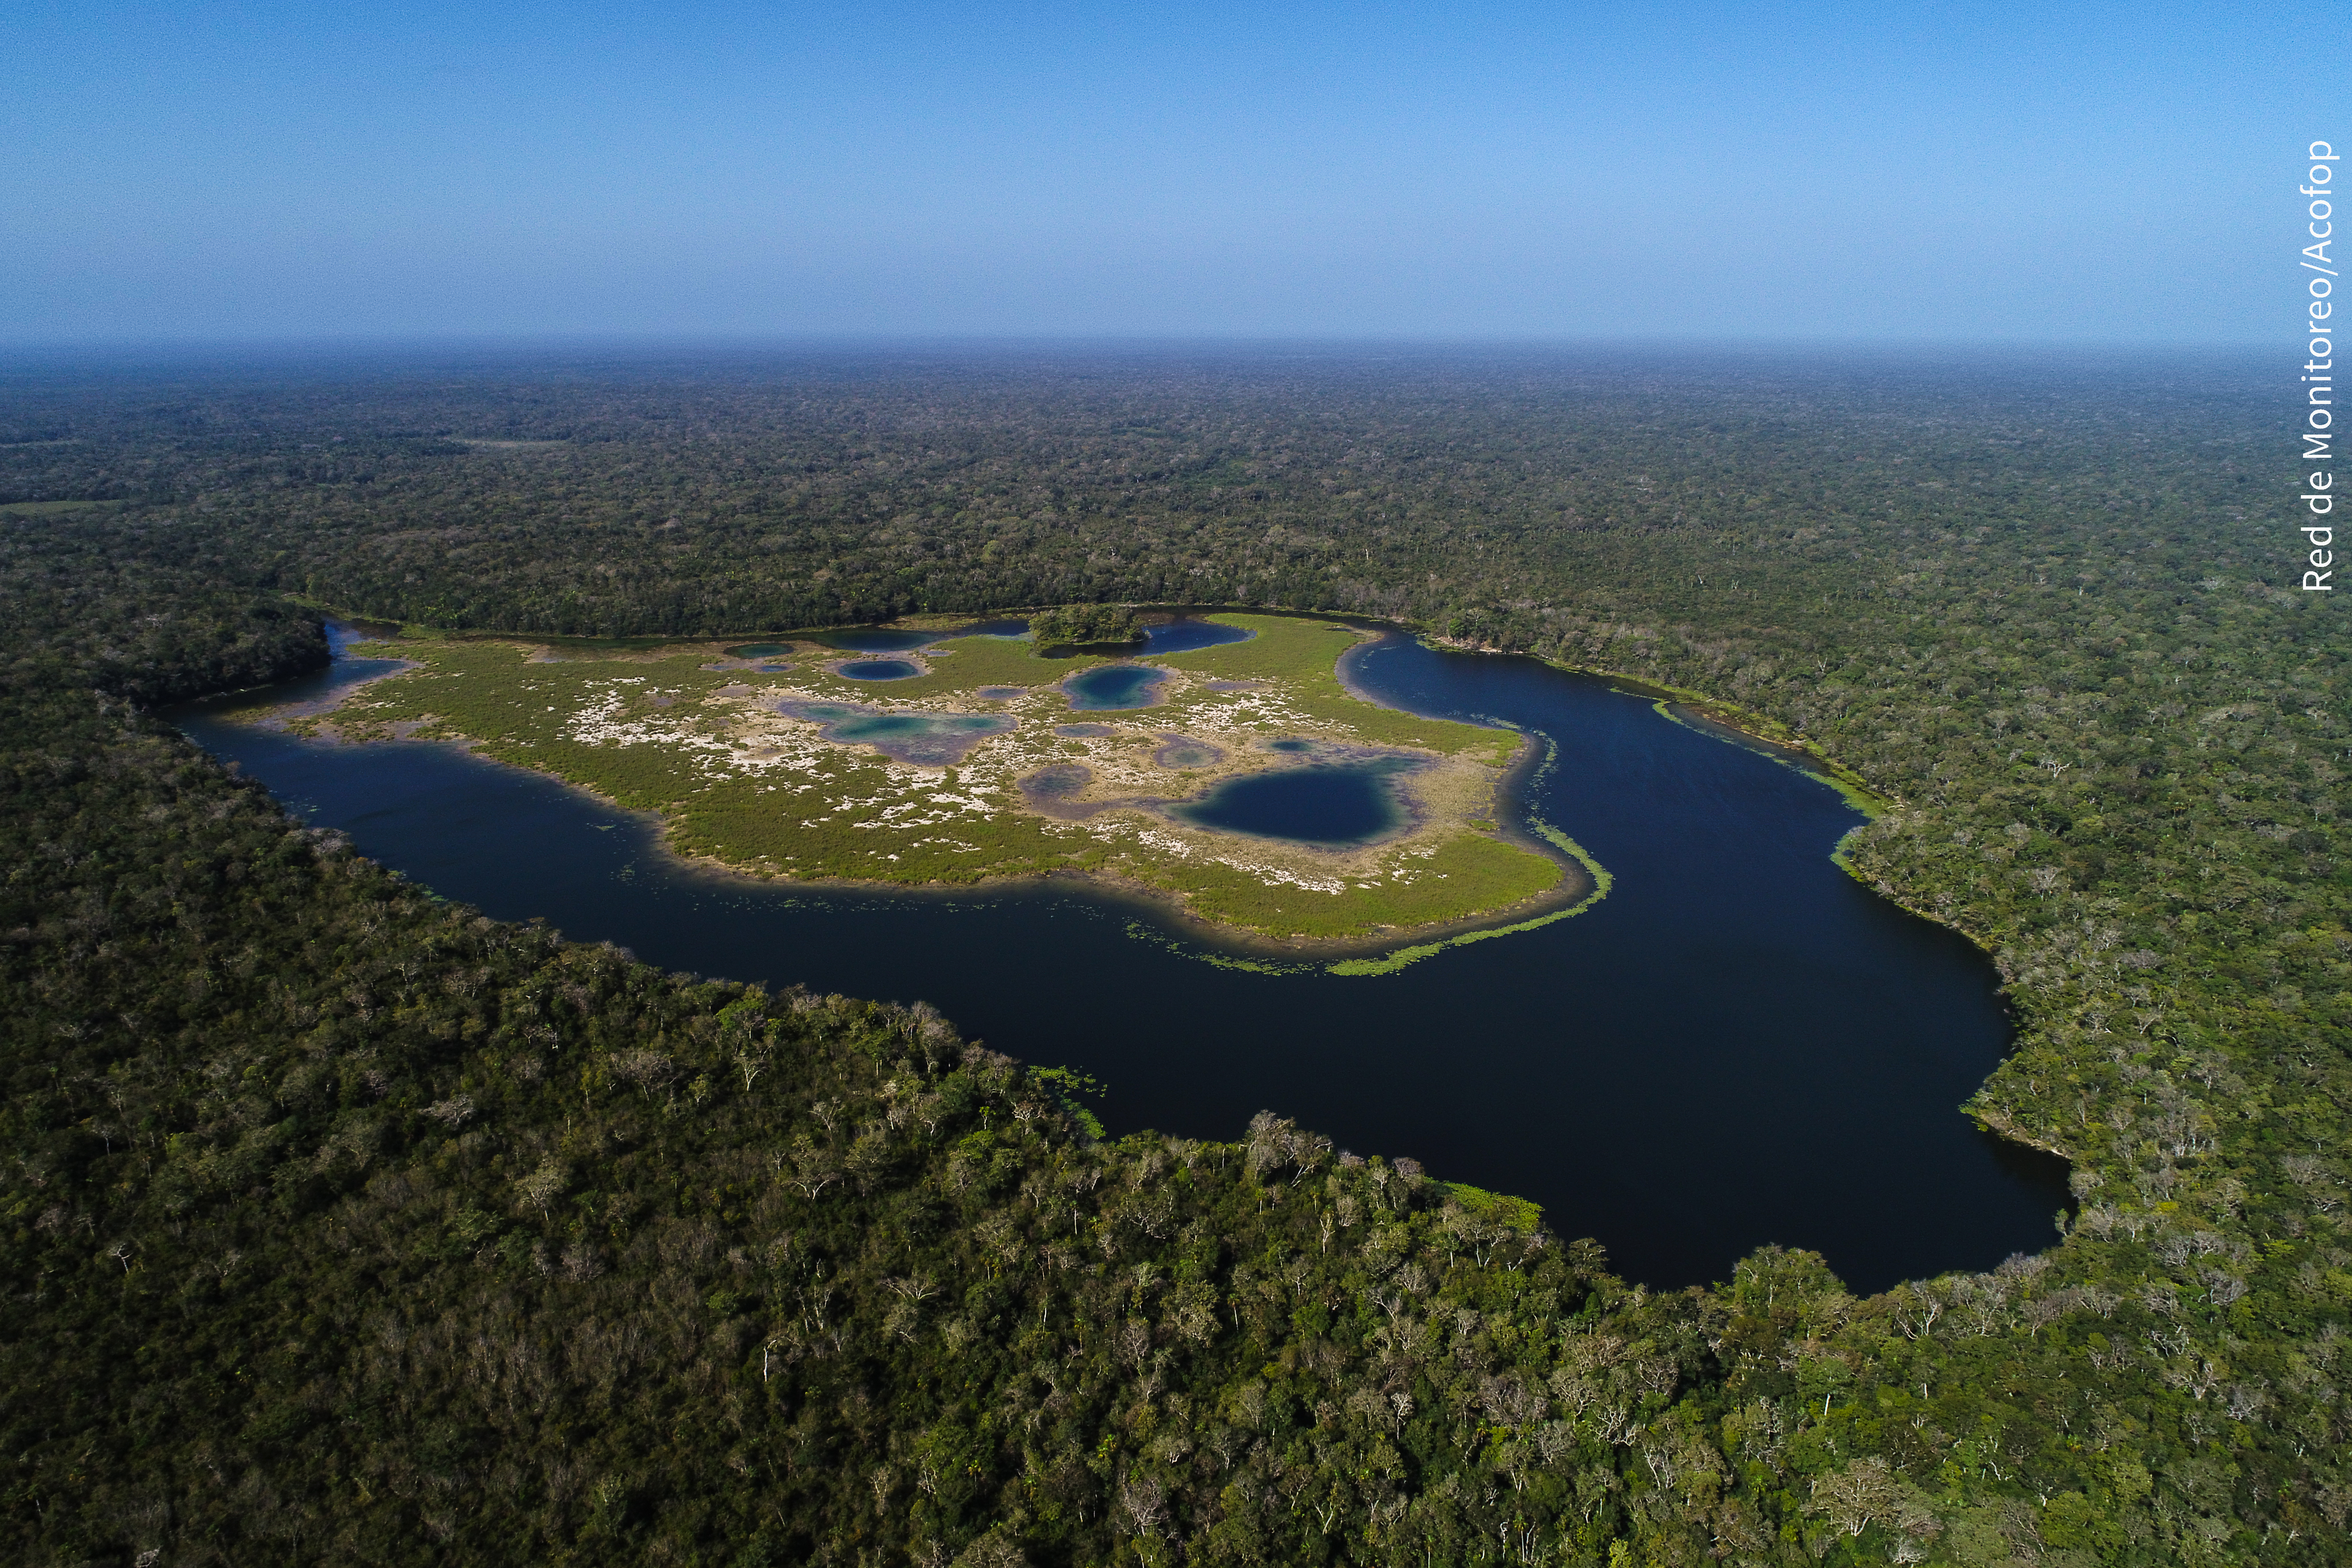 La Reserva de la Biosfera Maya es el hogar de miles de especies, gracias a su riqueza natural. También la habitan comunidades organizadas que protegen los recursos. (Foto Hemeroteca PL)